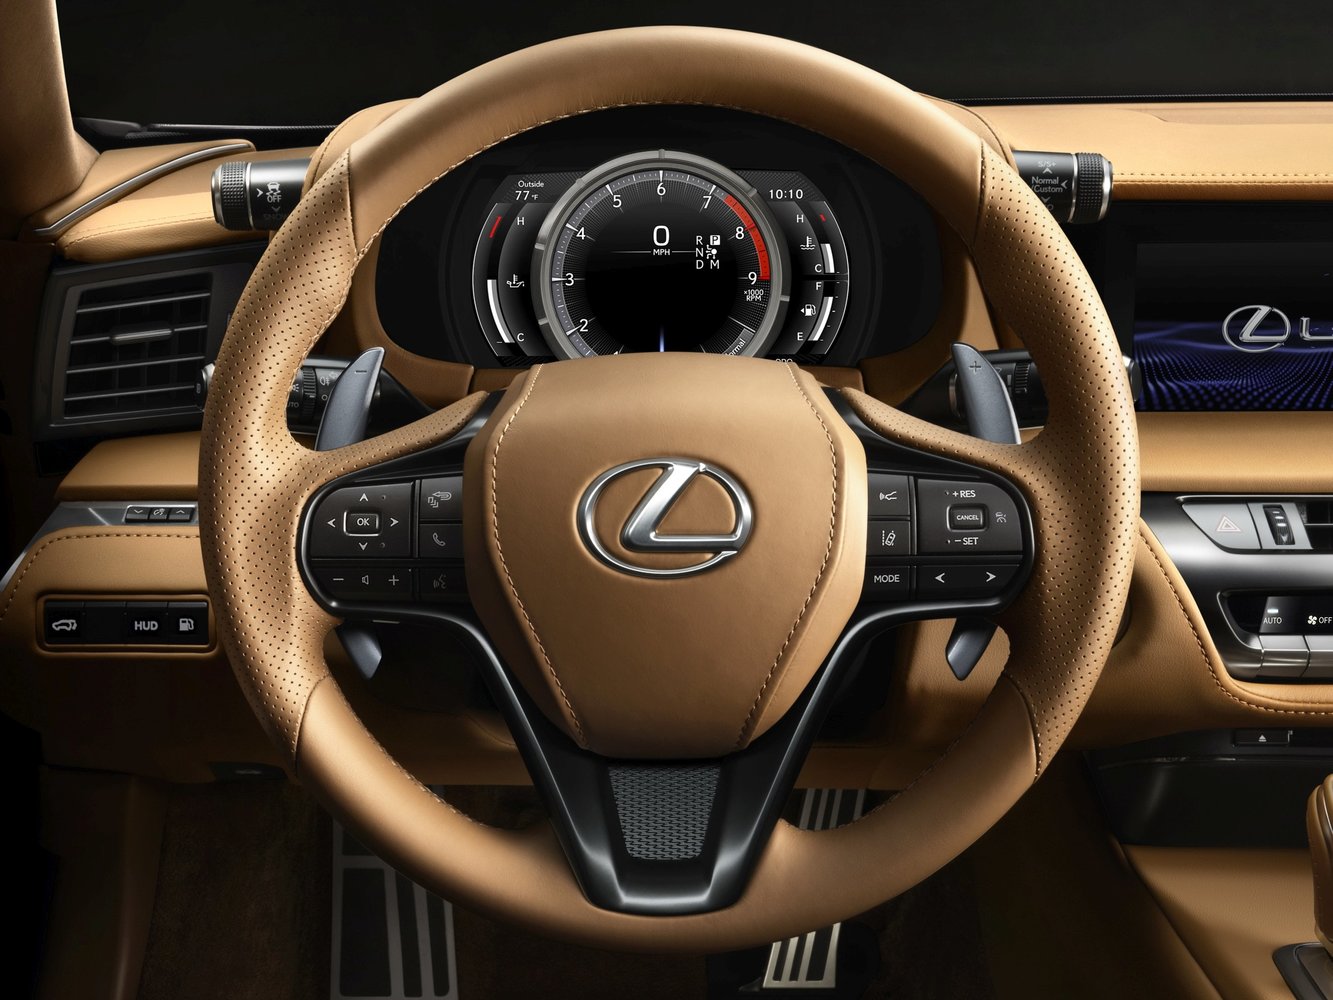 купе Lexus LC 2016г выпуска модификация 5.0 AT (467 л.с.)